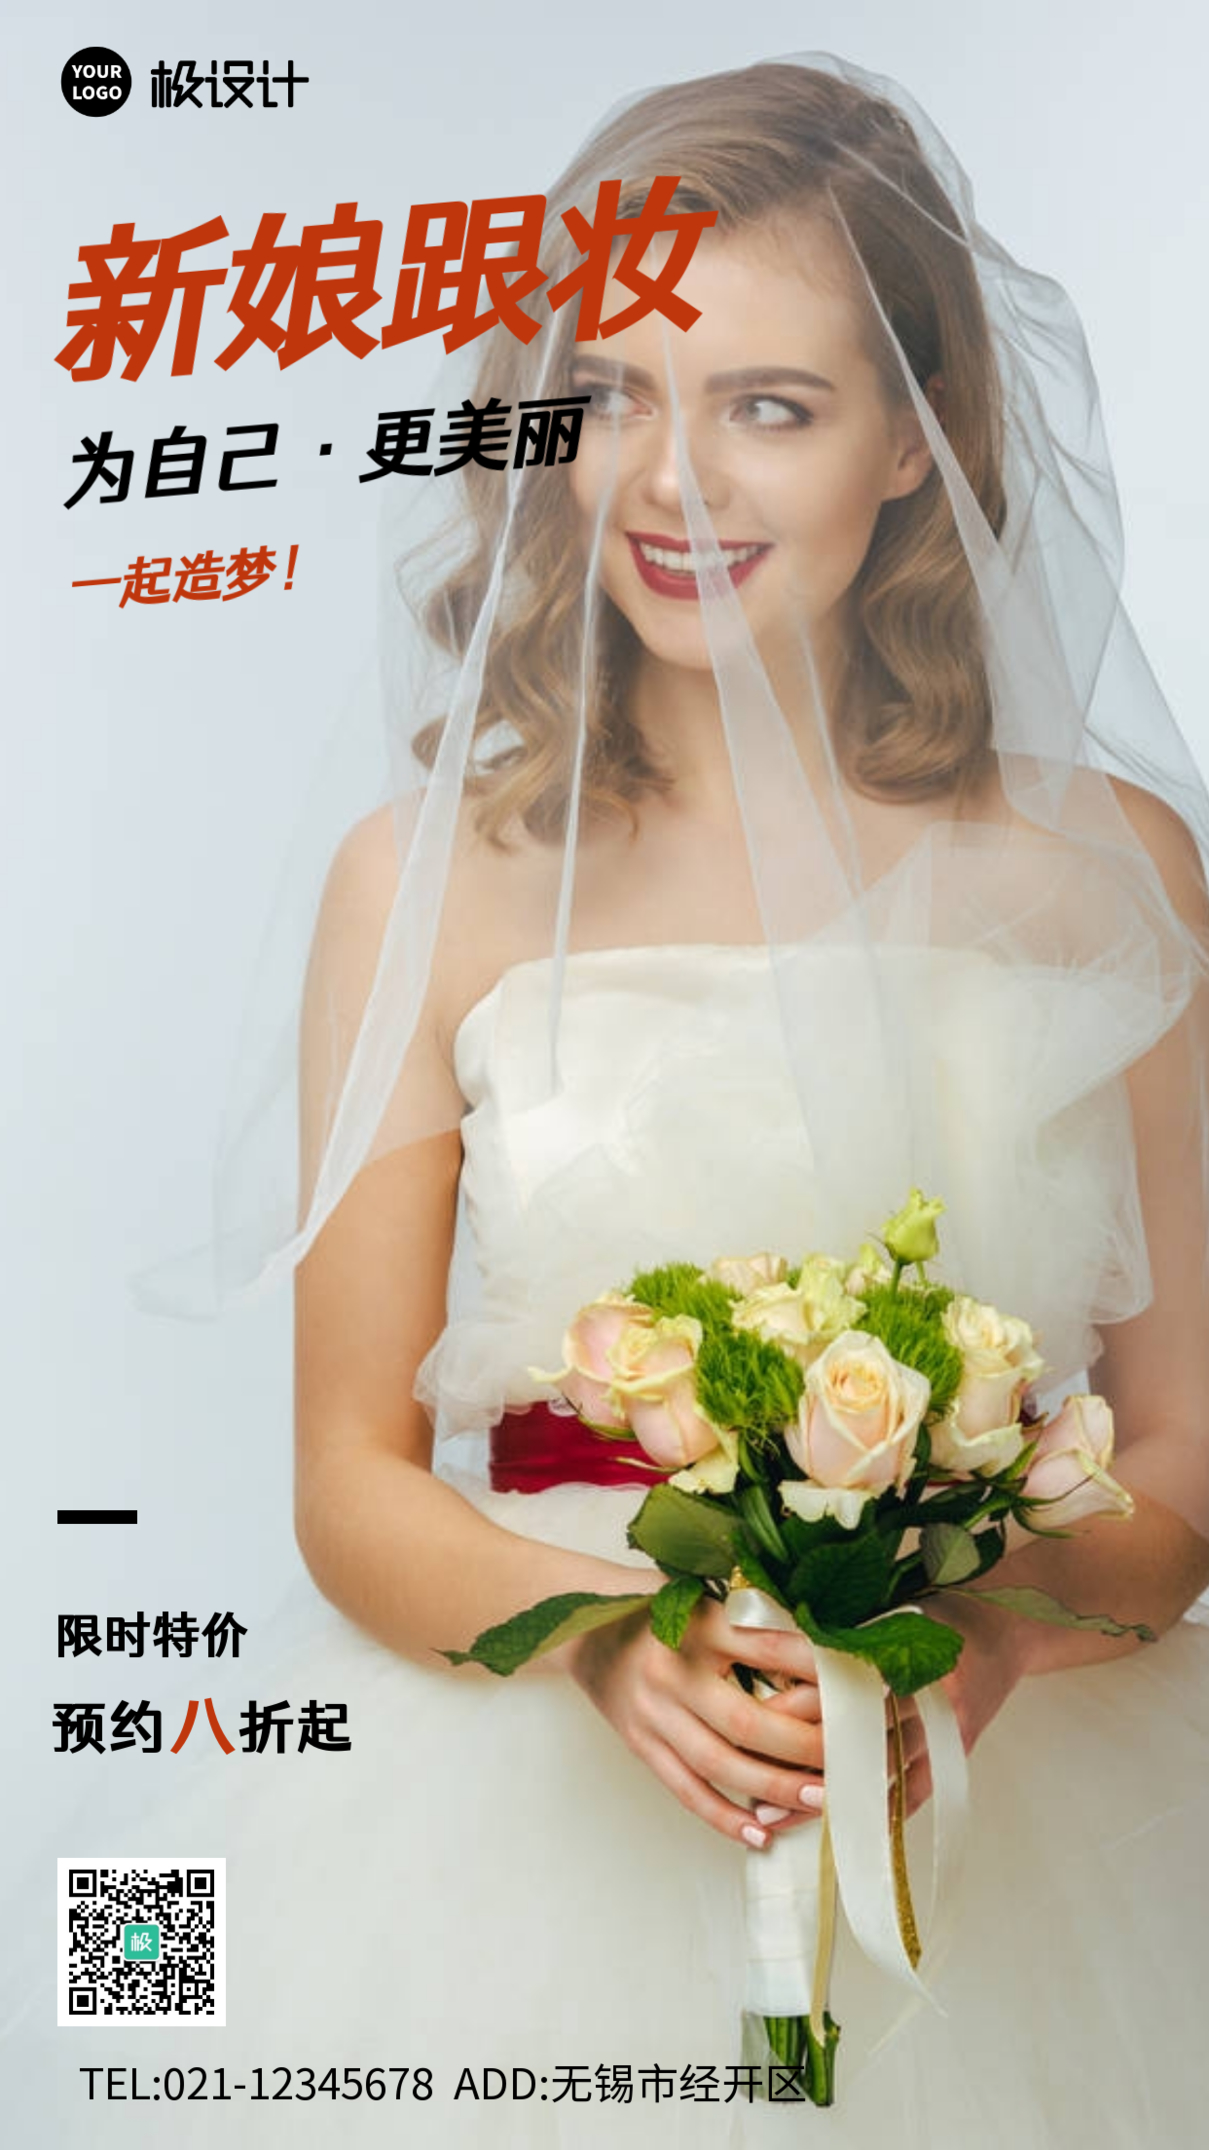 新娘跟妆宣传图简约大气营销手机海报